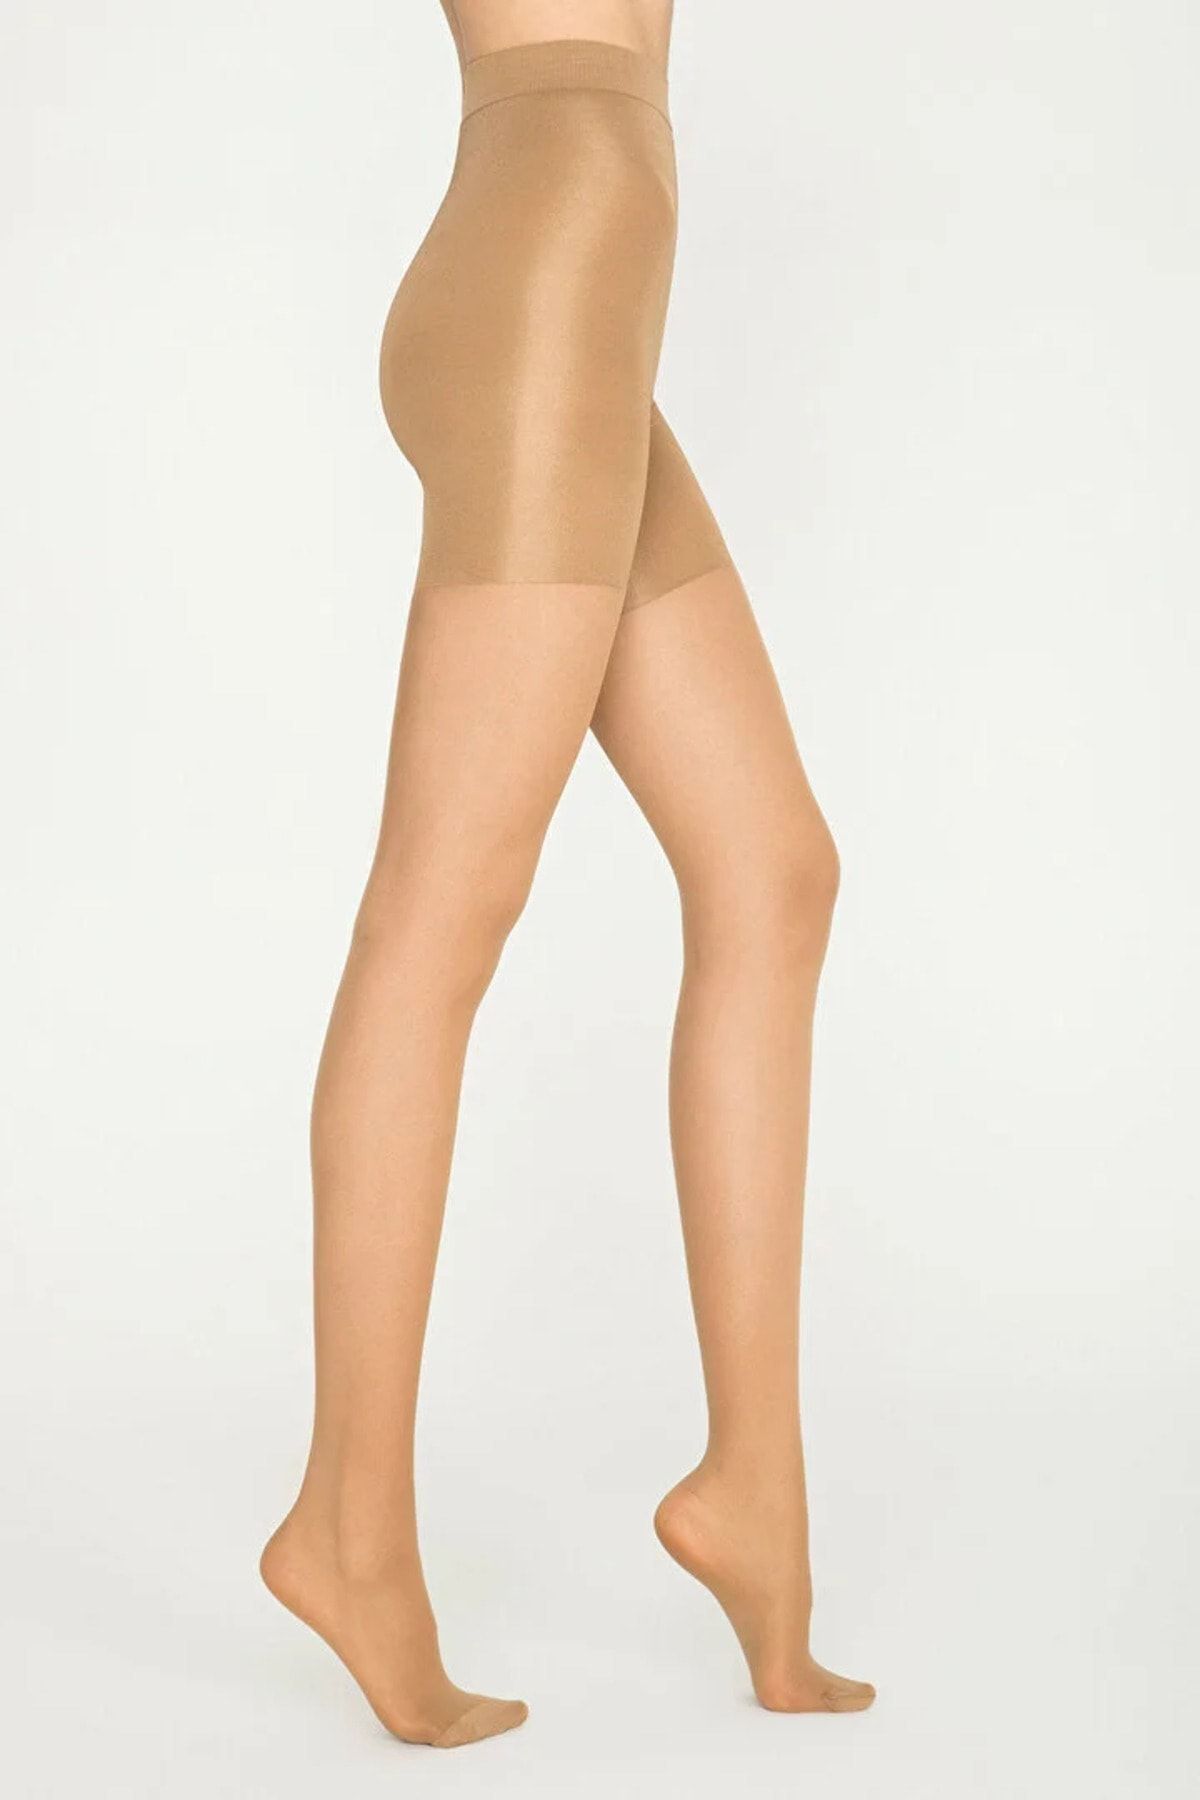 Penti Kadın Body Form Bronz Renk Şekillendirici Toparlayıcı Orta Kalın Korseli Külotlu Çorap